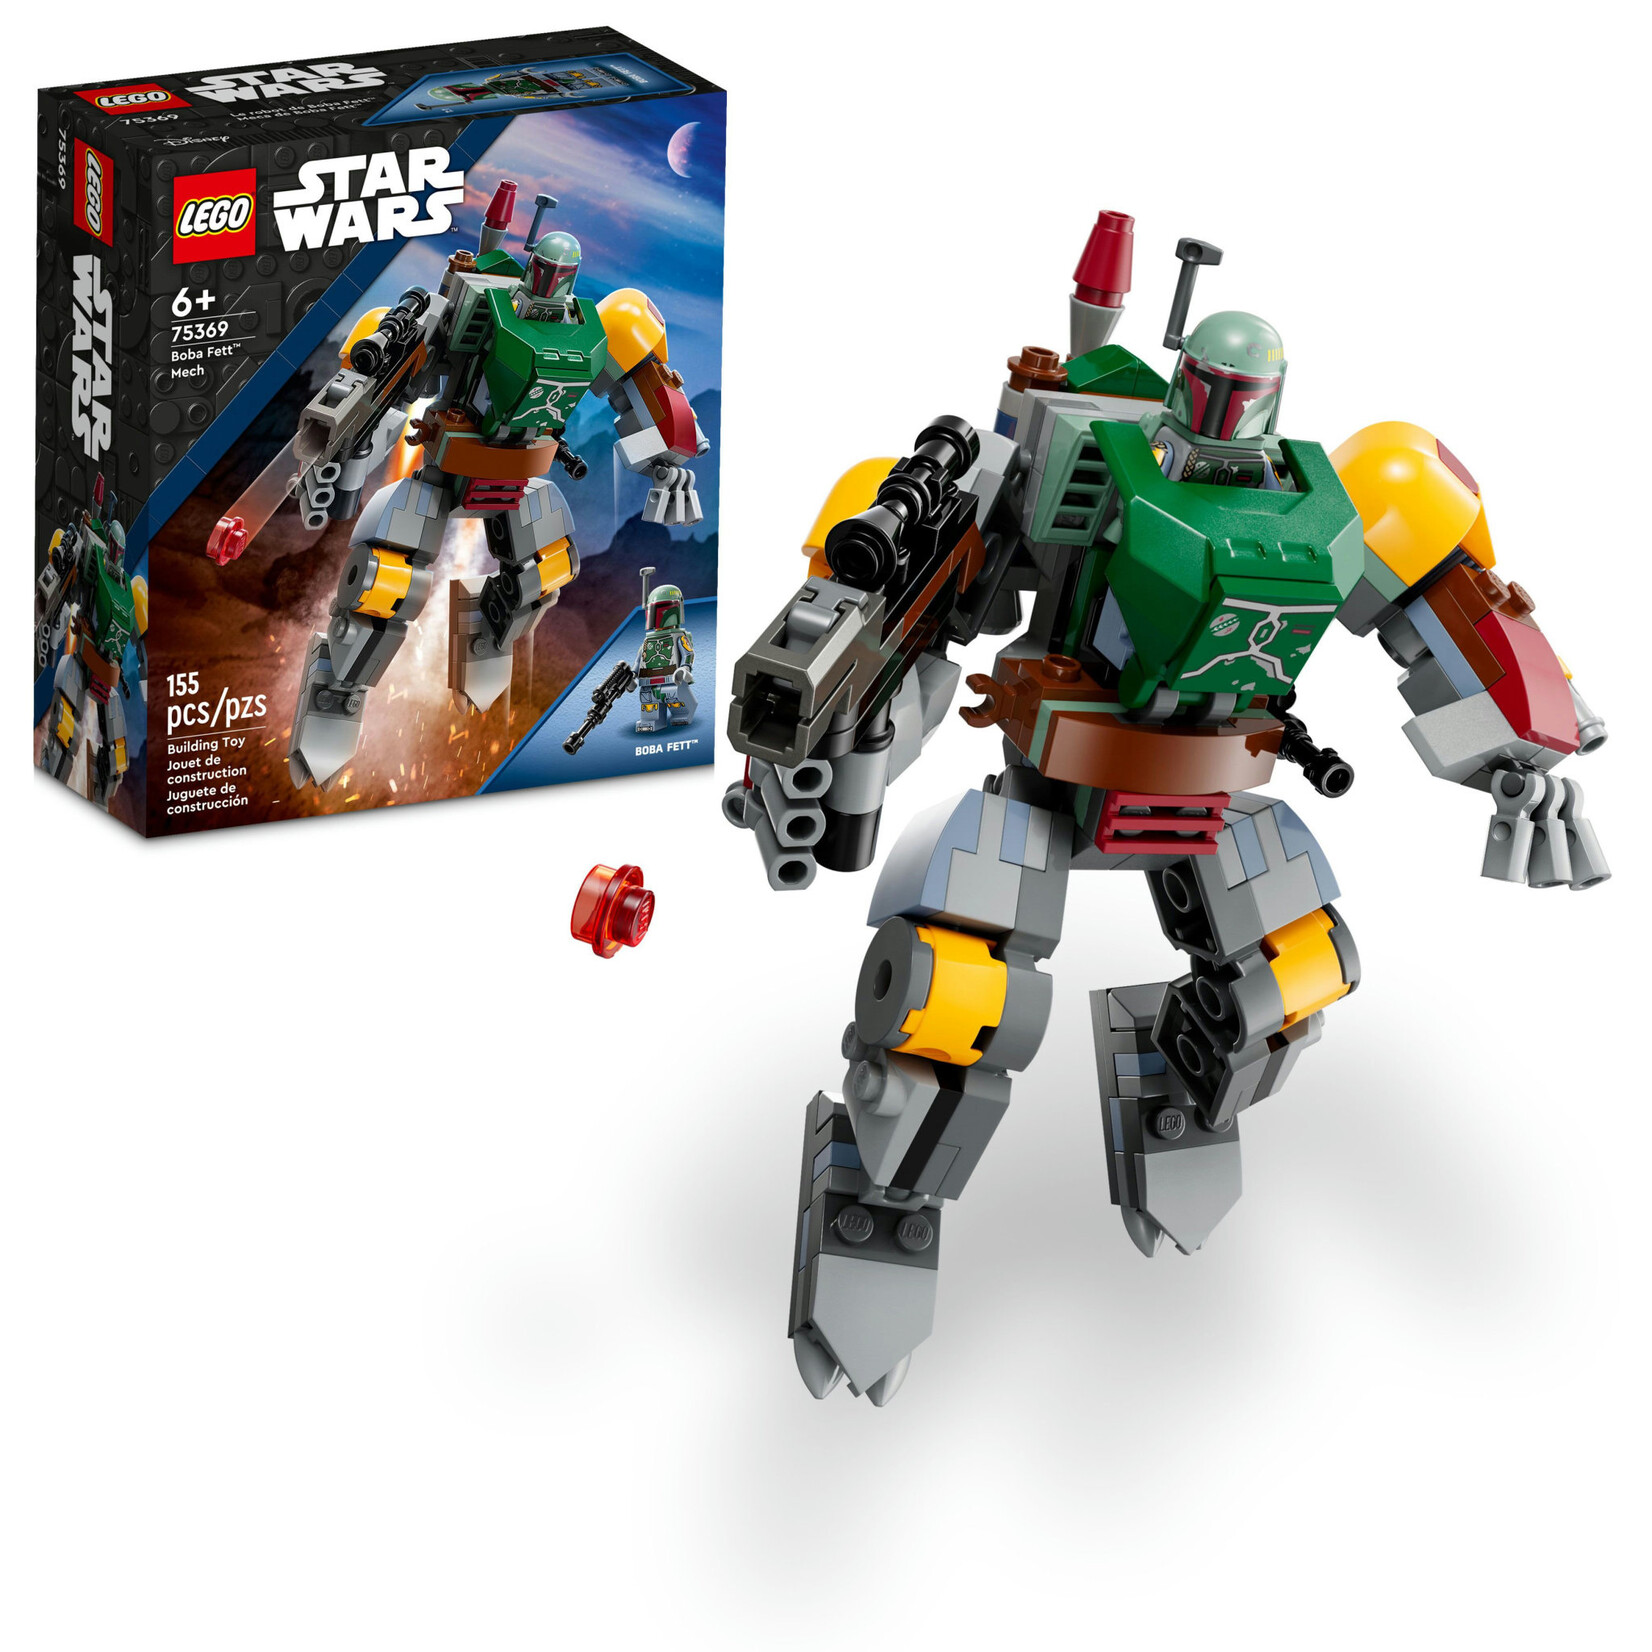 LEGO 75369 LEGO® Star Wars™ Boba Fett™ Mech